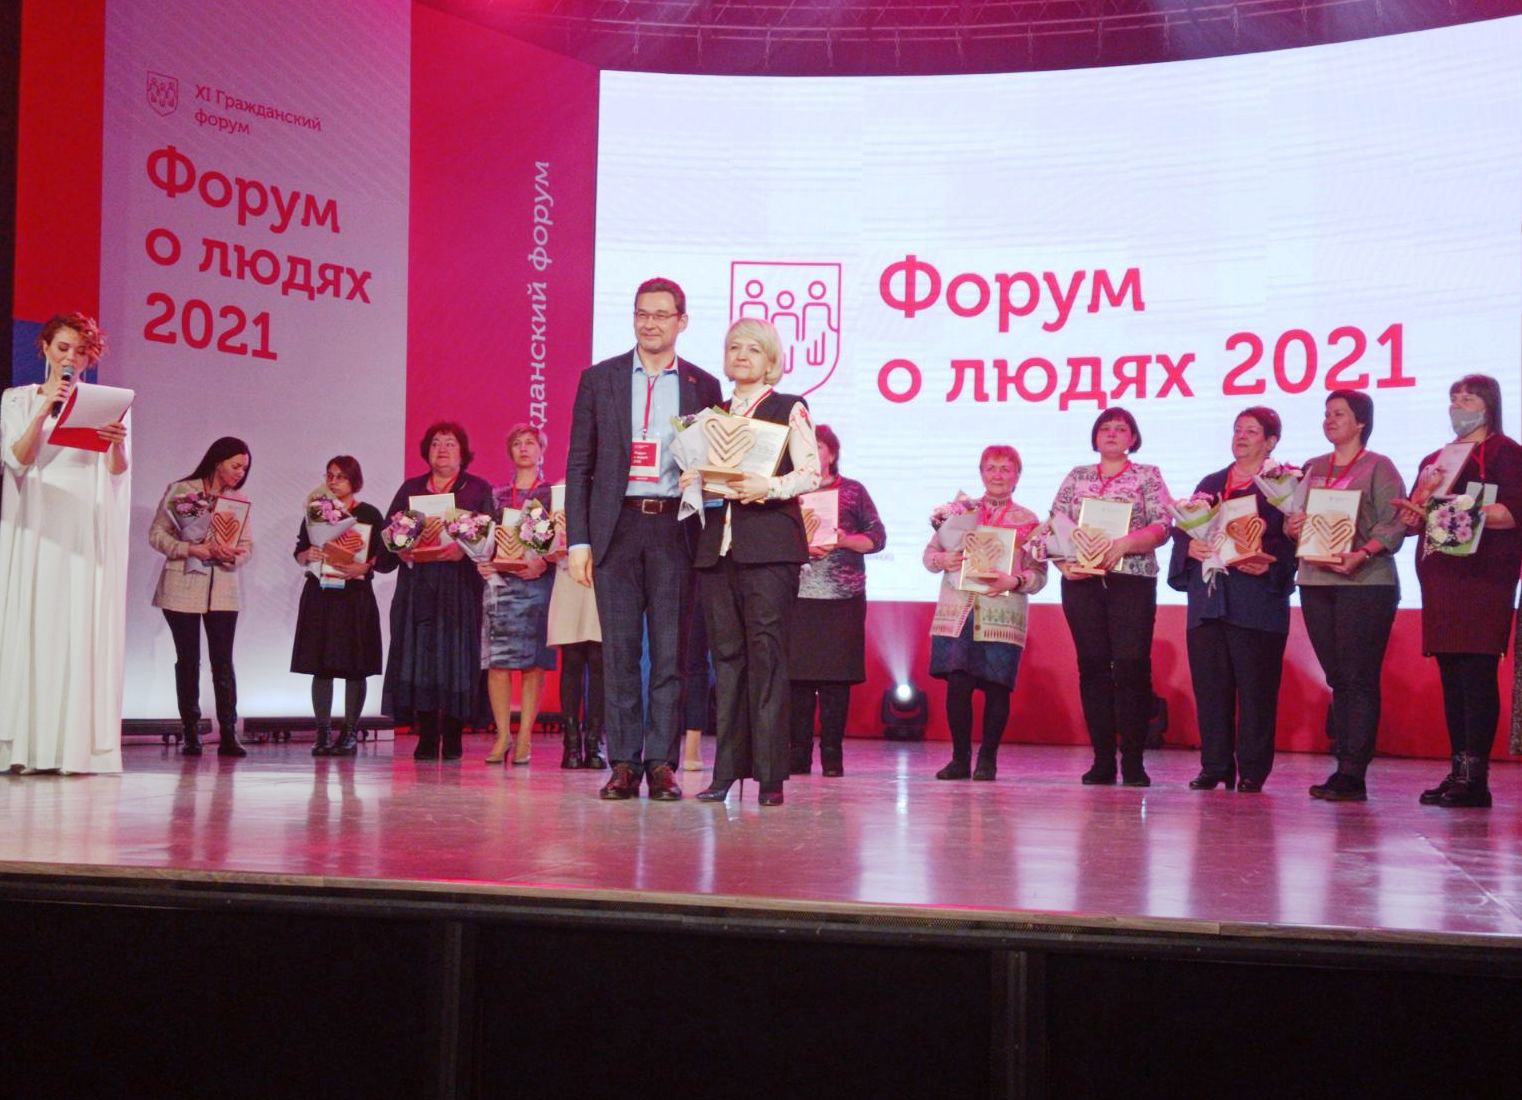 В Красноярске на Форуме о людях выбрали лучшие социальные практики. АСИ от 24.12.2021